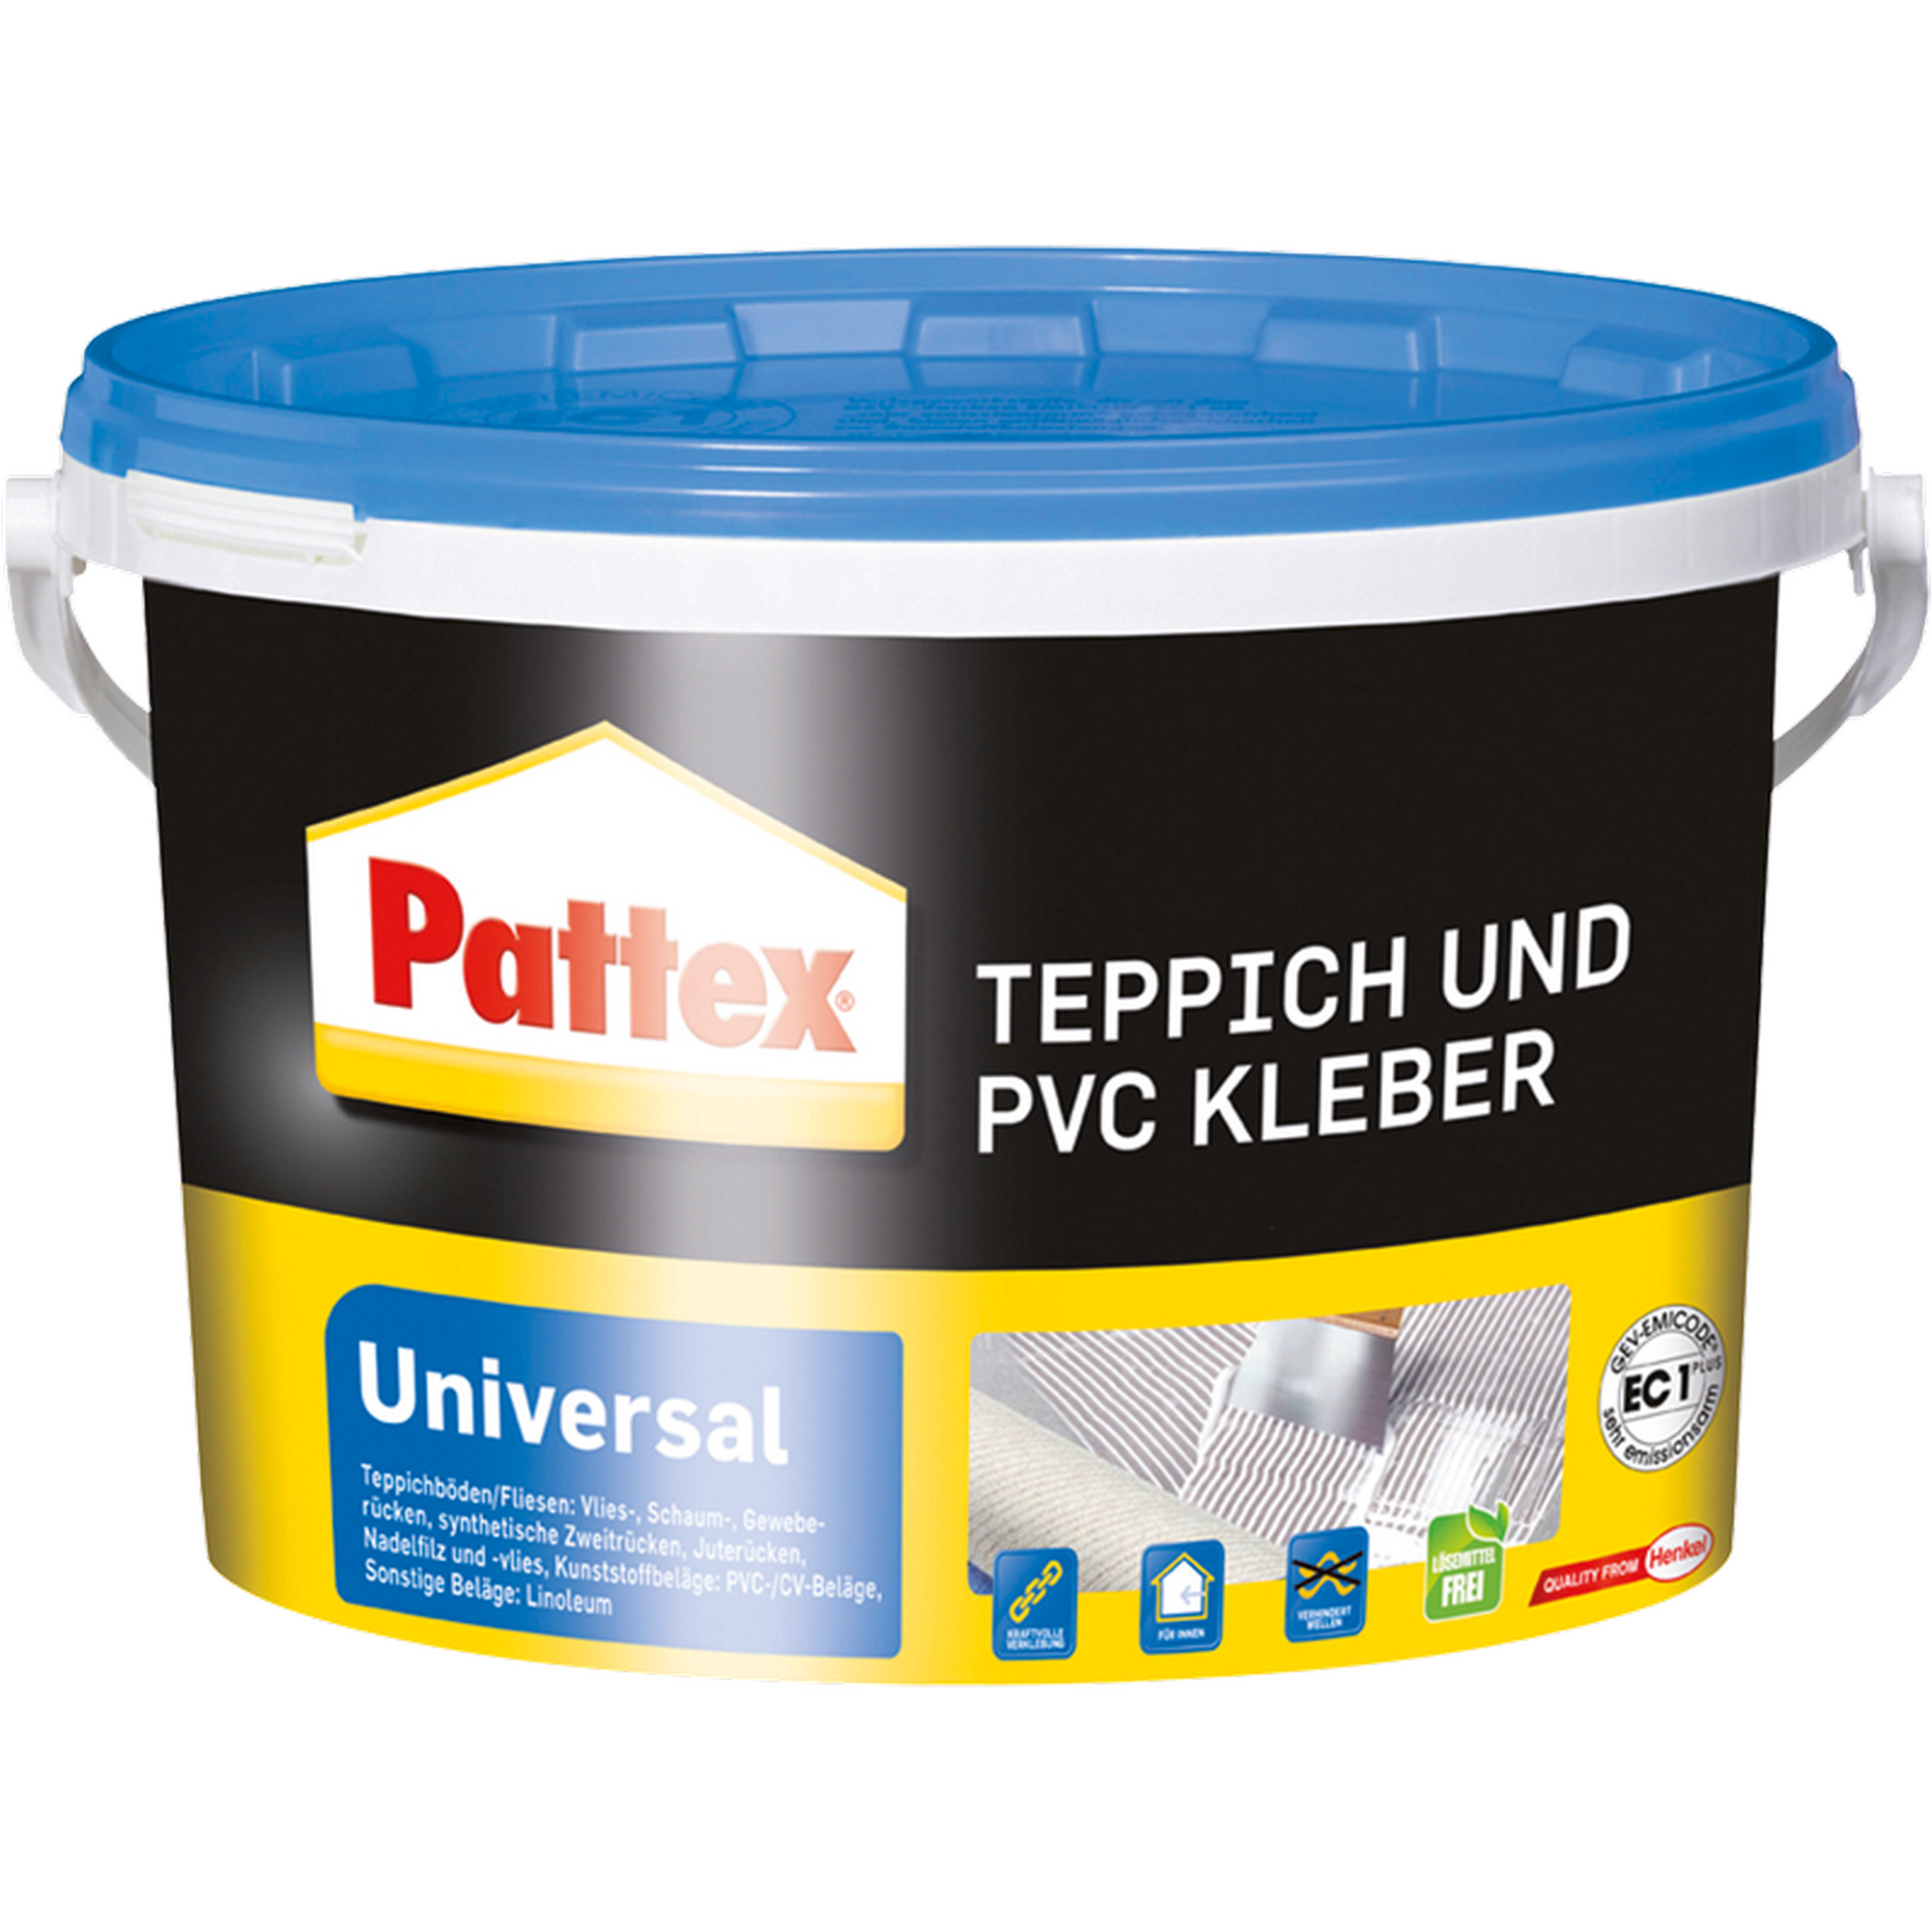 Teppich- und PVC-Kleber 'Universal' weiß 6,5 kg + product picture